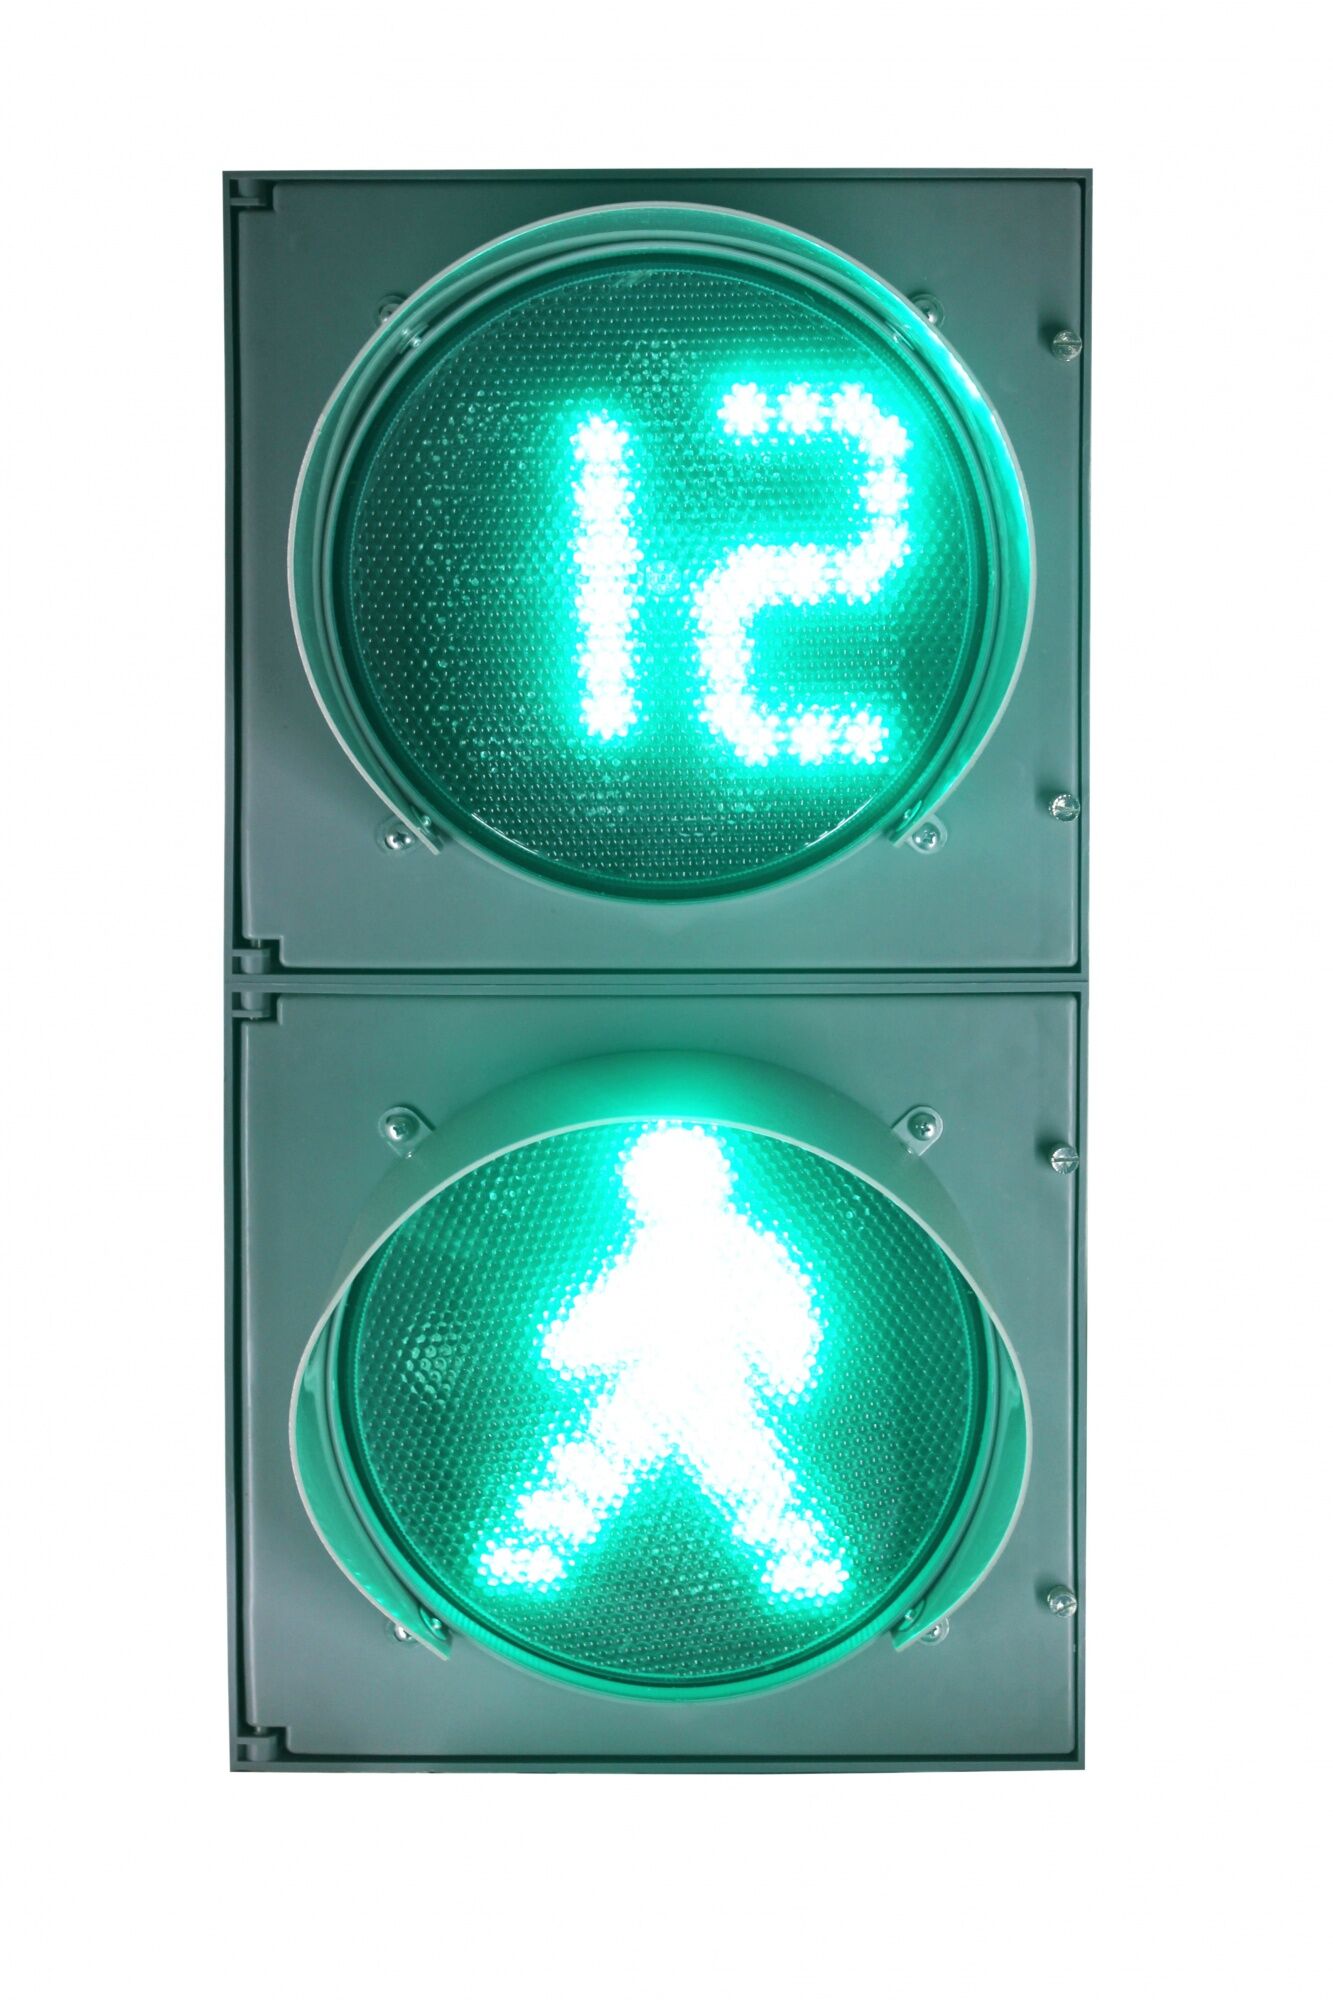 Светофор светодиодный П.1.1 с табло обратного отсчета времени зеленого сигнала, анимацией и программируемым УЗСП, с комп